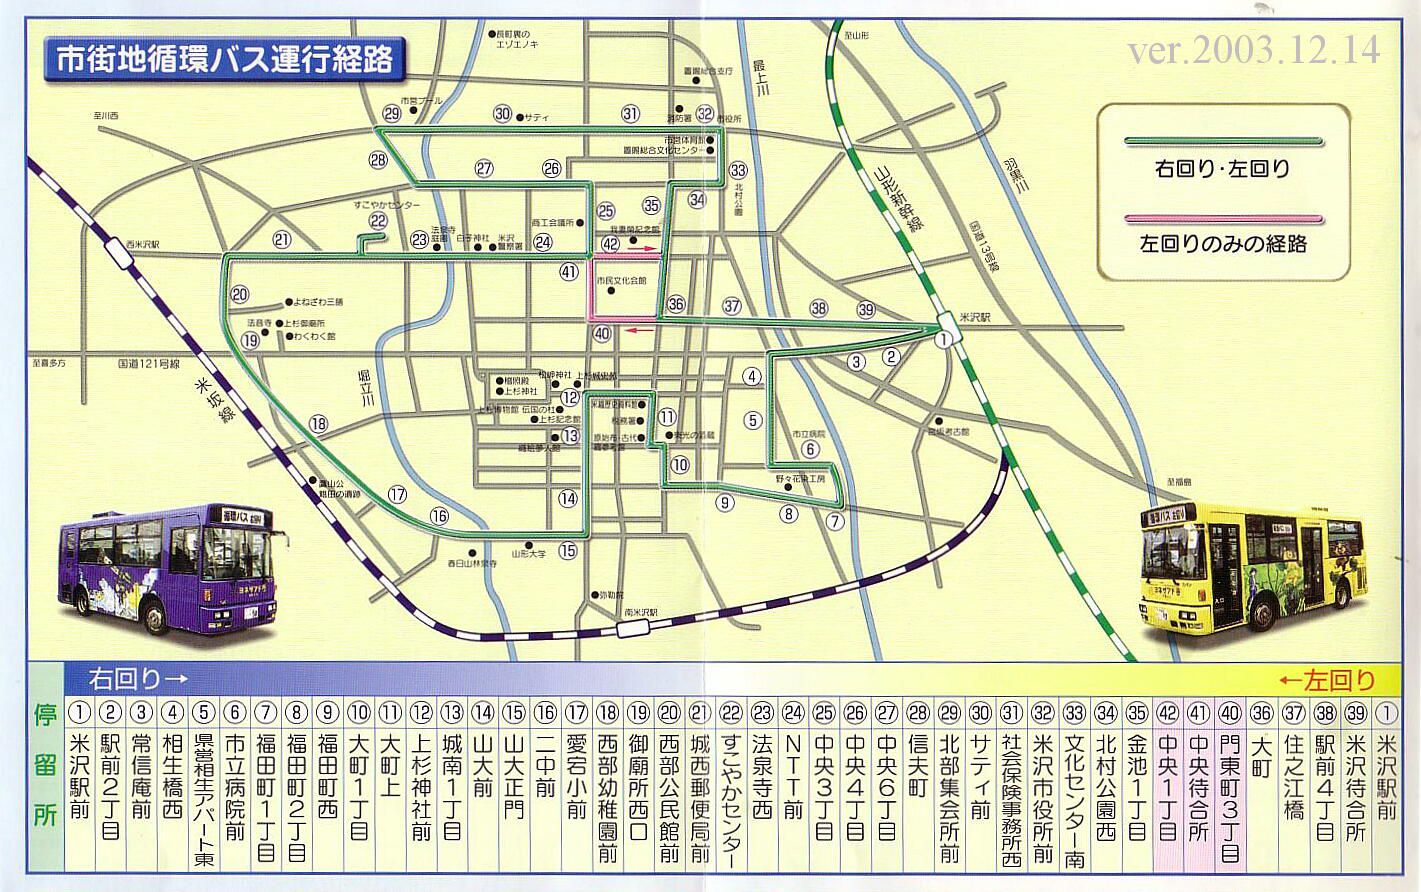 米沢市街地循環バス「ヨネザアド号」運行経路マップ